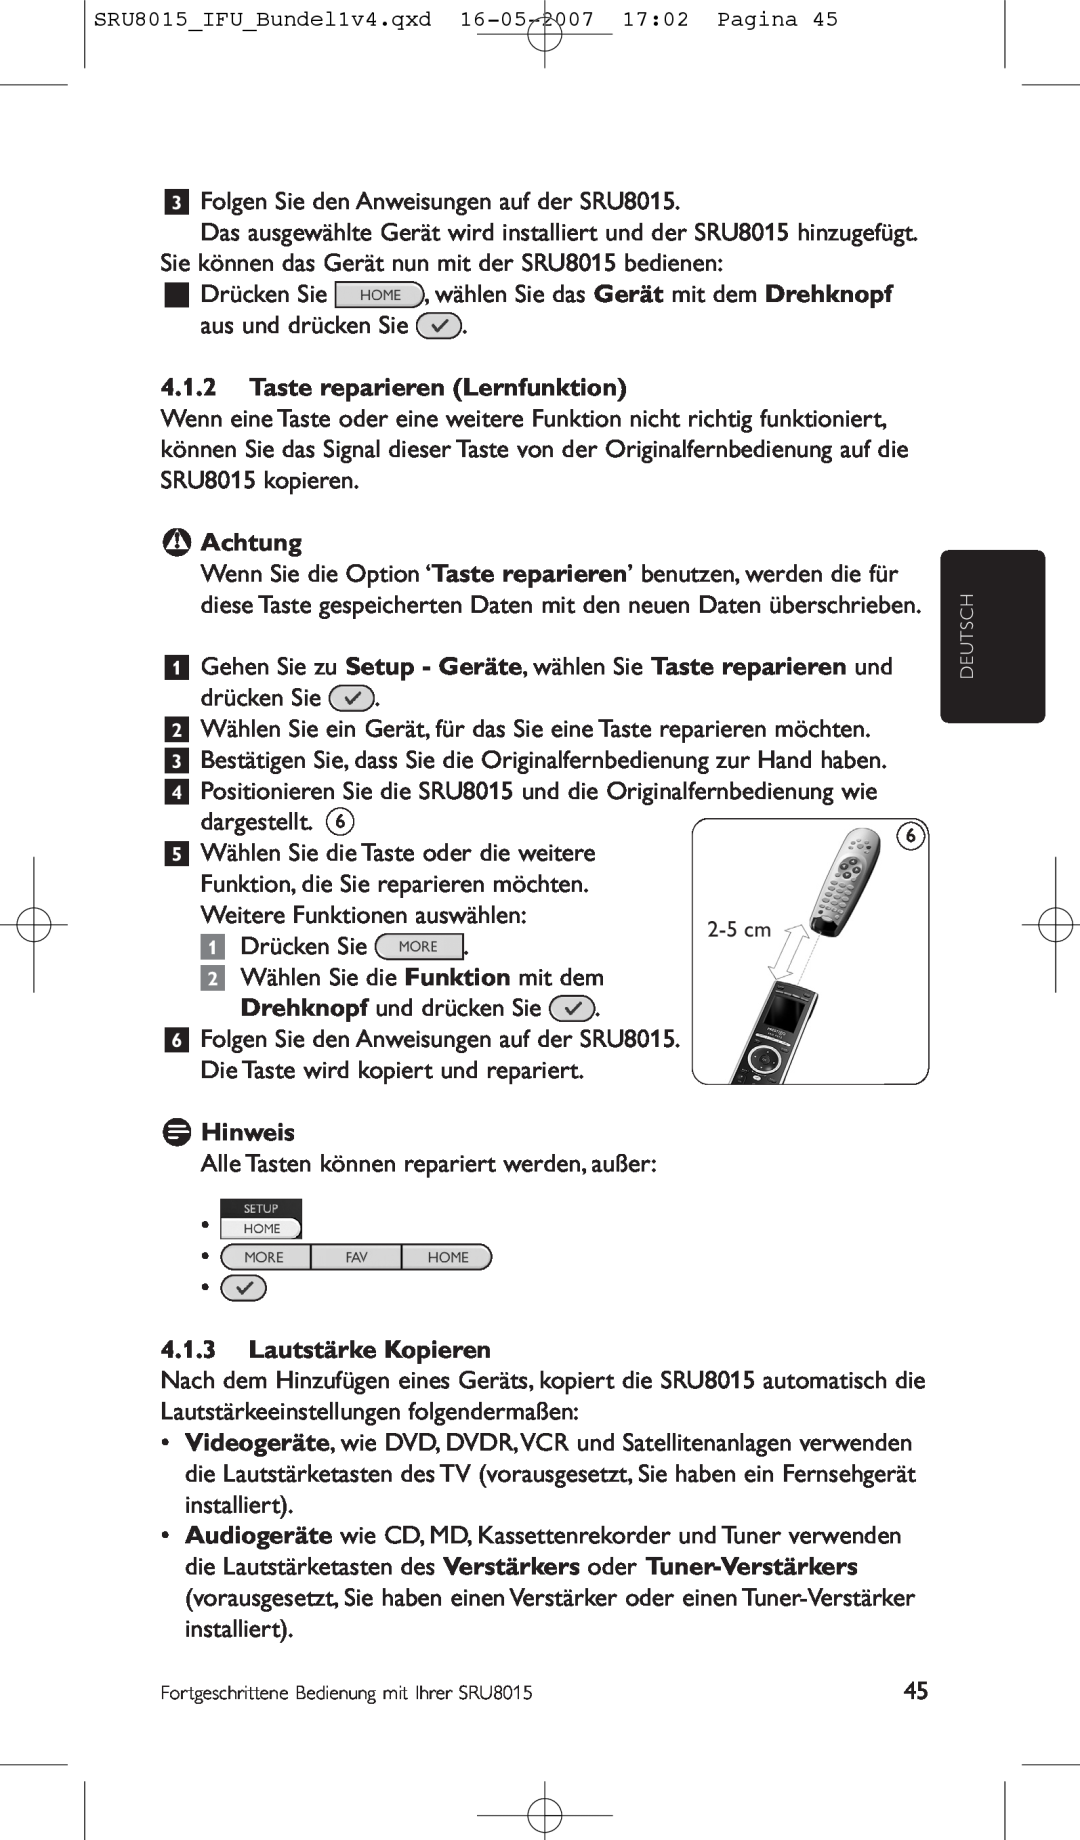 Philips SRU8015 manual Taste reparieren Lernfunktion, B Achtung, Lautstärke Kopieren, D Hinweis, Drücken Sie 